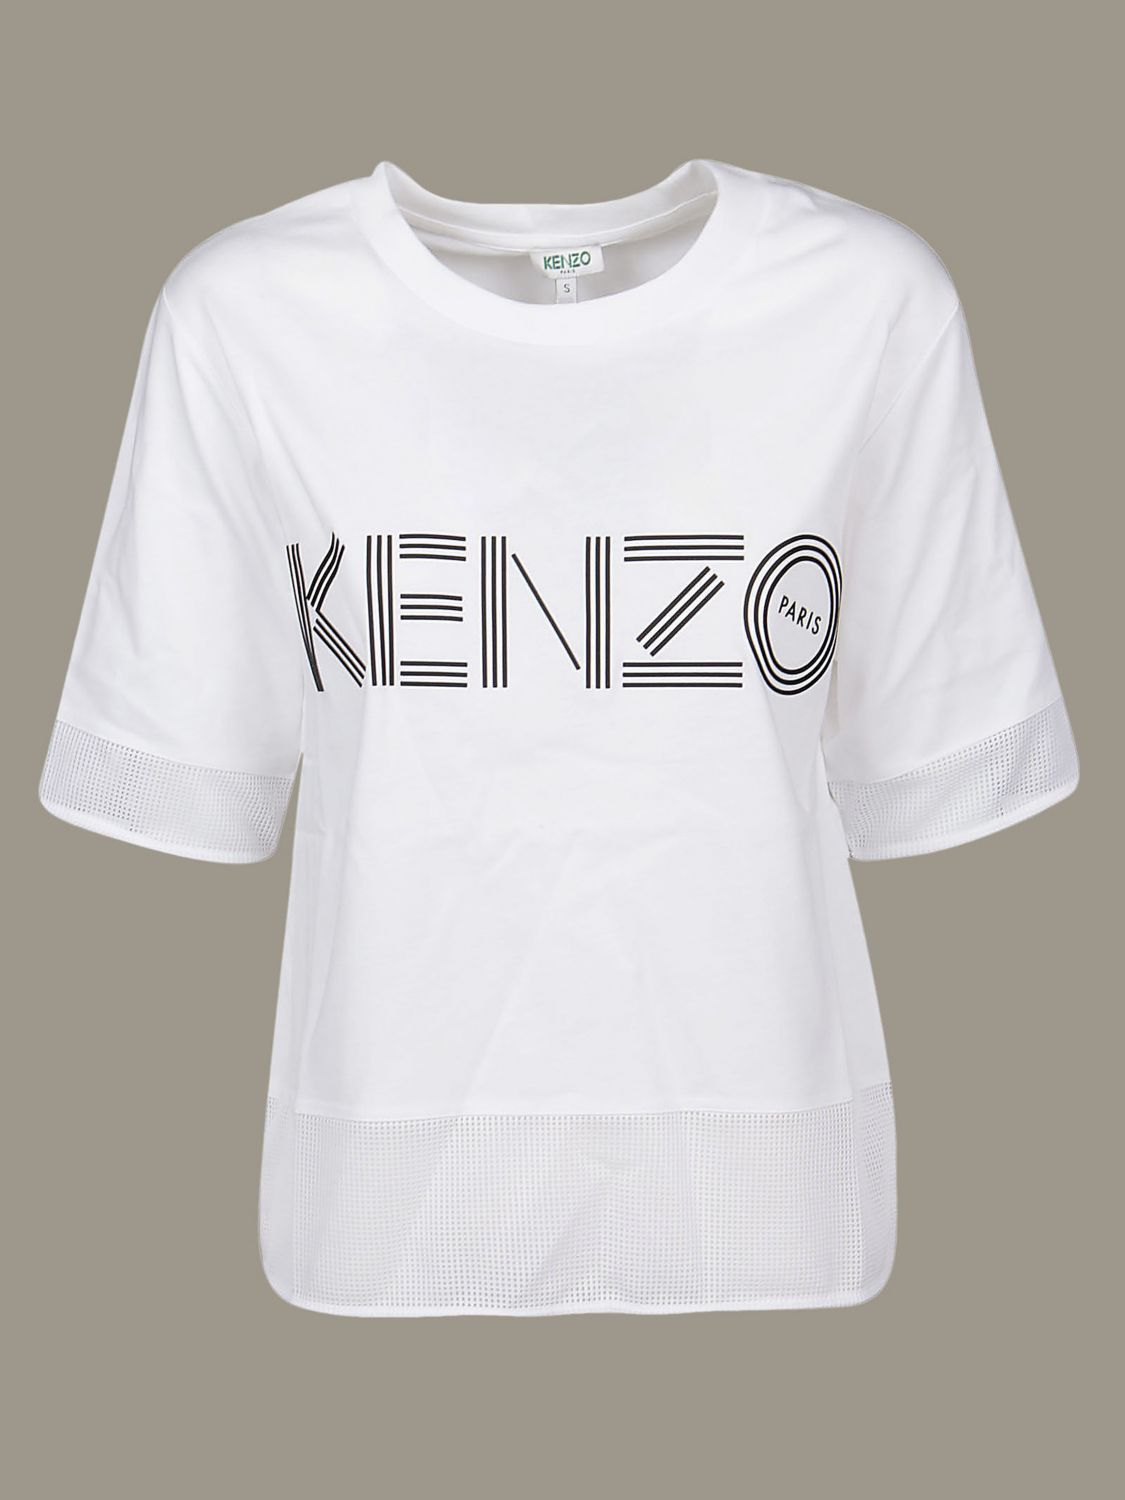 white kenzo t shirt womens